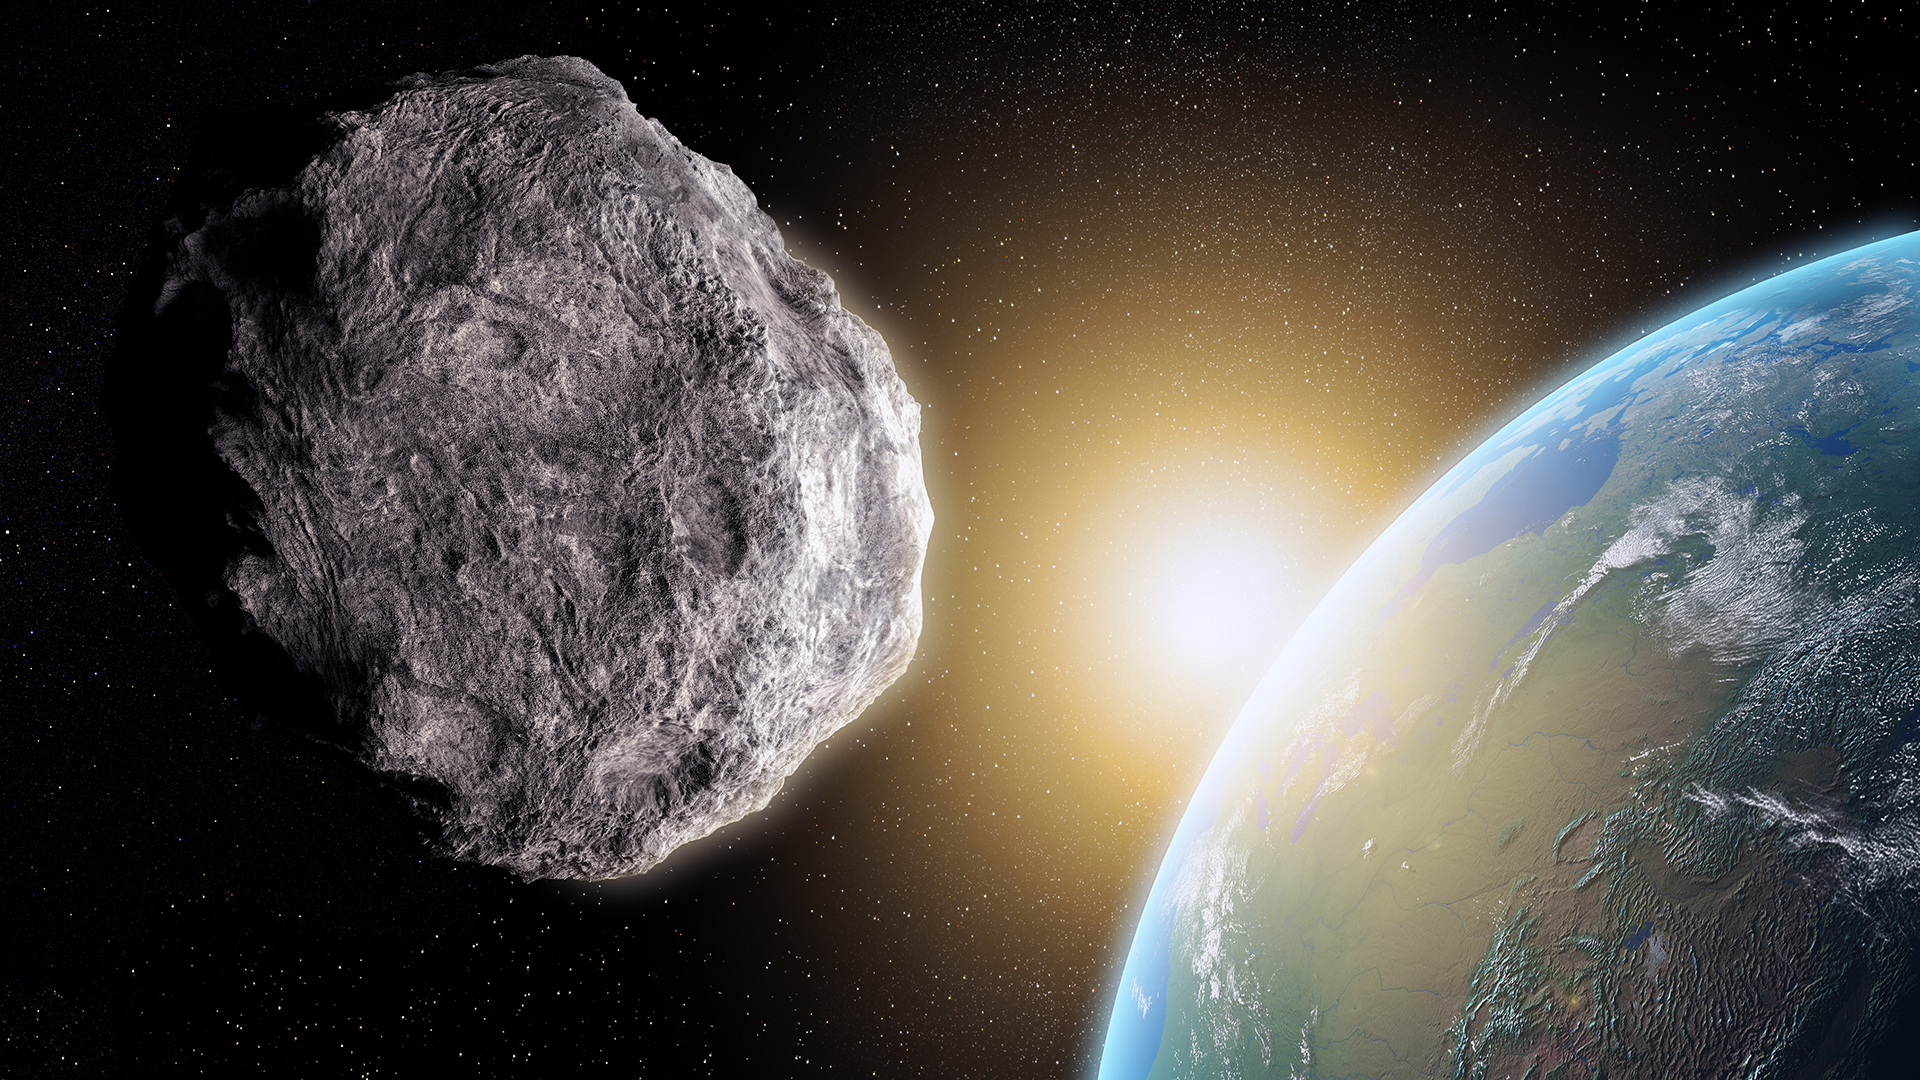 asteroid 2022 da14 path